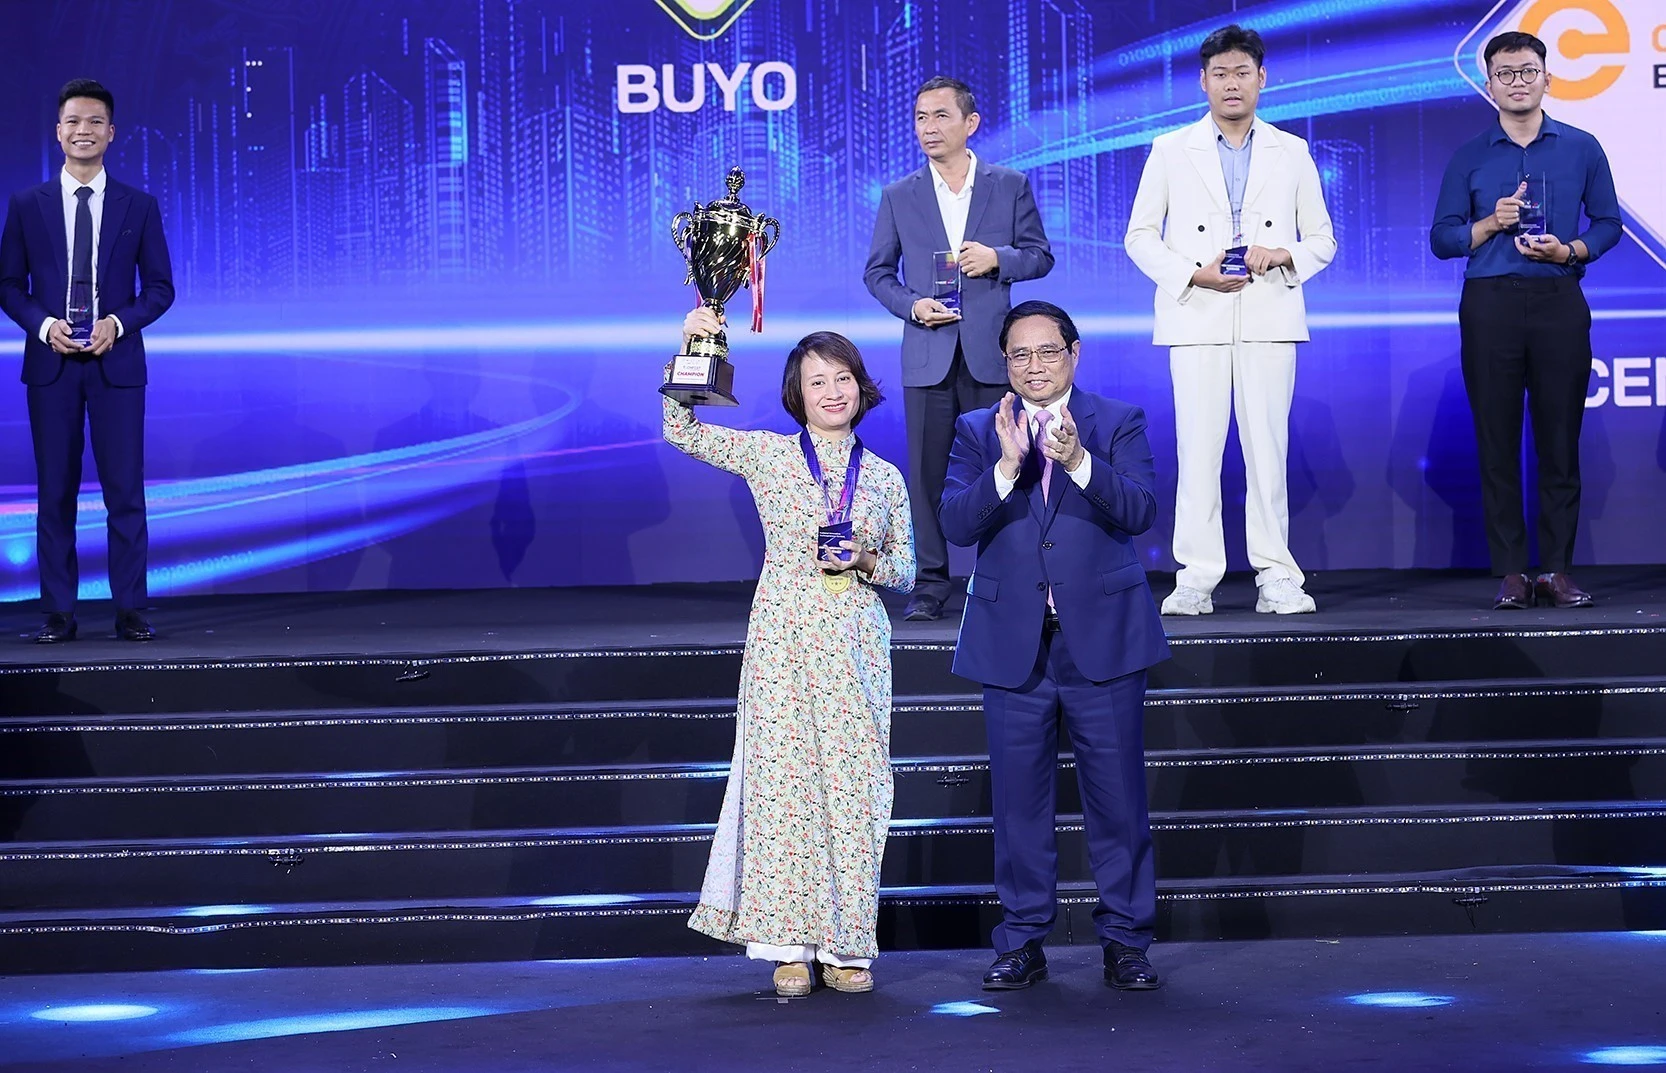 Thủ tướng Phạm Minh Chính trao giải nhất cuộc thi tìm kiếm tài năng khởi nghiệp đổi mới sáng tạo quốc gia cho BUYO Bioplastics về lĩnh vực nhựa sinh học. (Ảnh: Dương Giang/TTXVN)